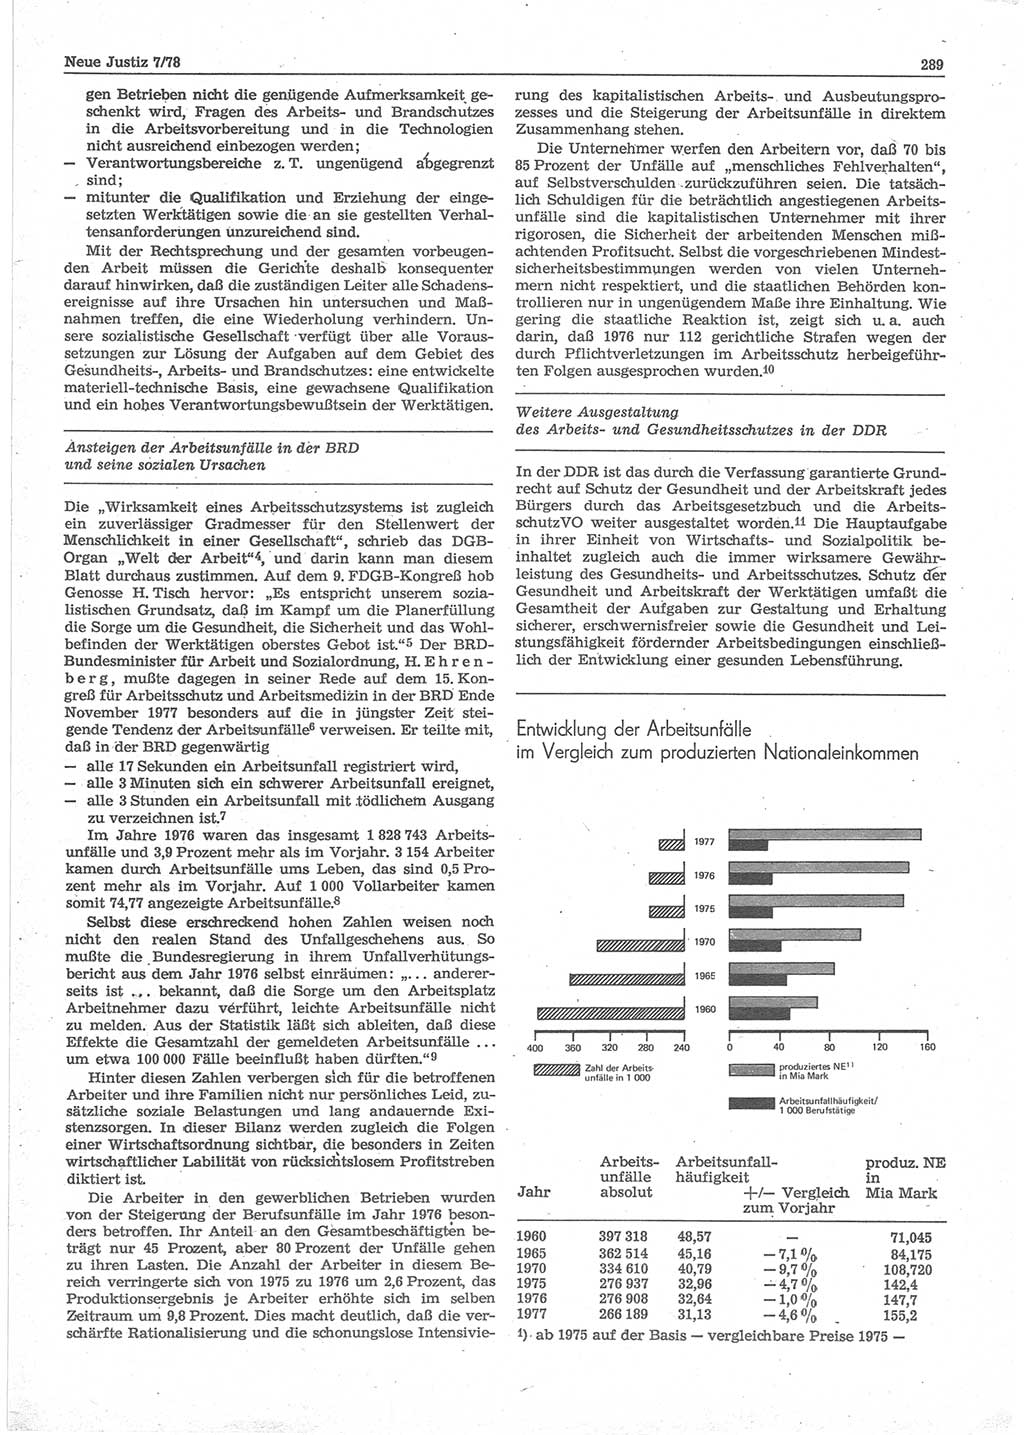 Neue Justiz (NJ), Zeitschrift für sozialistisches Recht und Gesetzlichkeit [Deutsche Demokratische Republik (DDR)], 32. Jahrgang 1978, Seite 289 (NJ DDR 1978, S. 289)